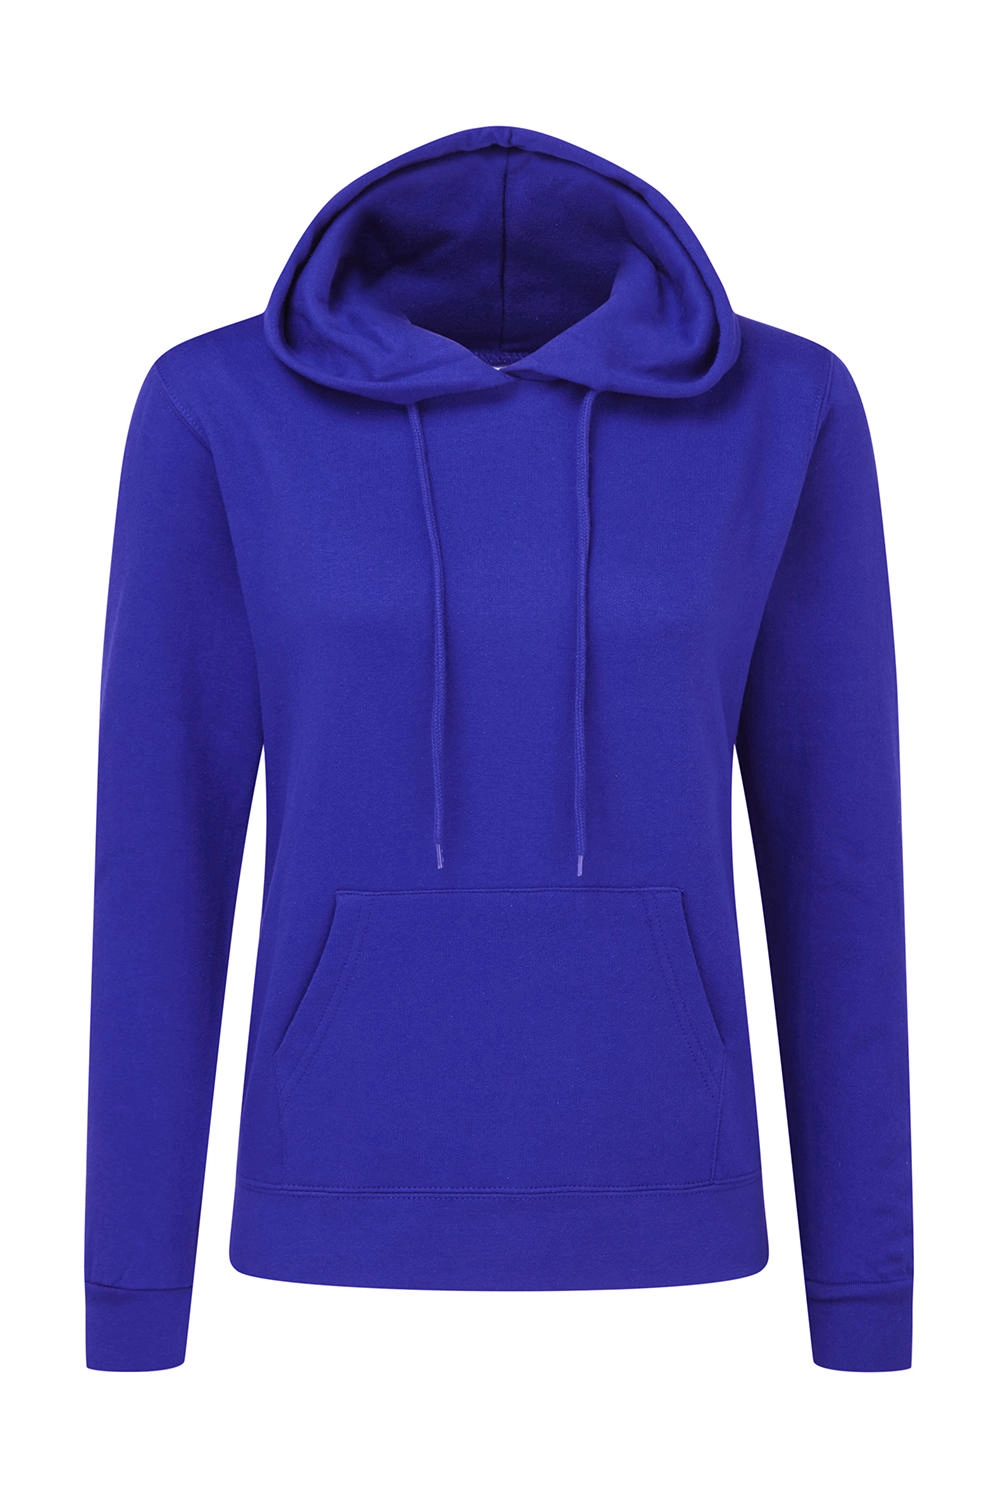 Hooded Sweatshirt Women zum Besticken und Bedrucken in der Farbe Royal Blue mit Ihren Logo, Schriftzug oder Motiv.